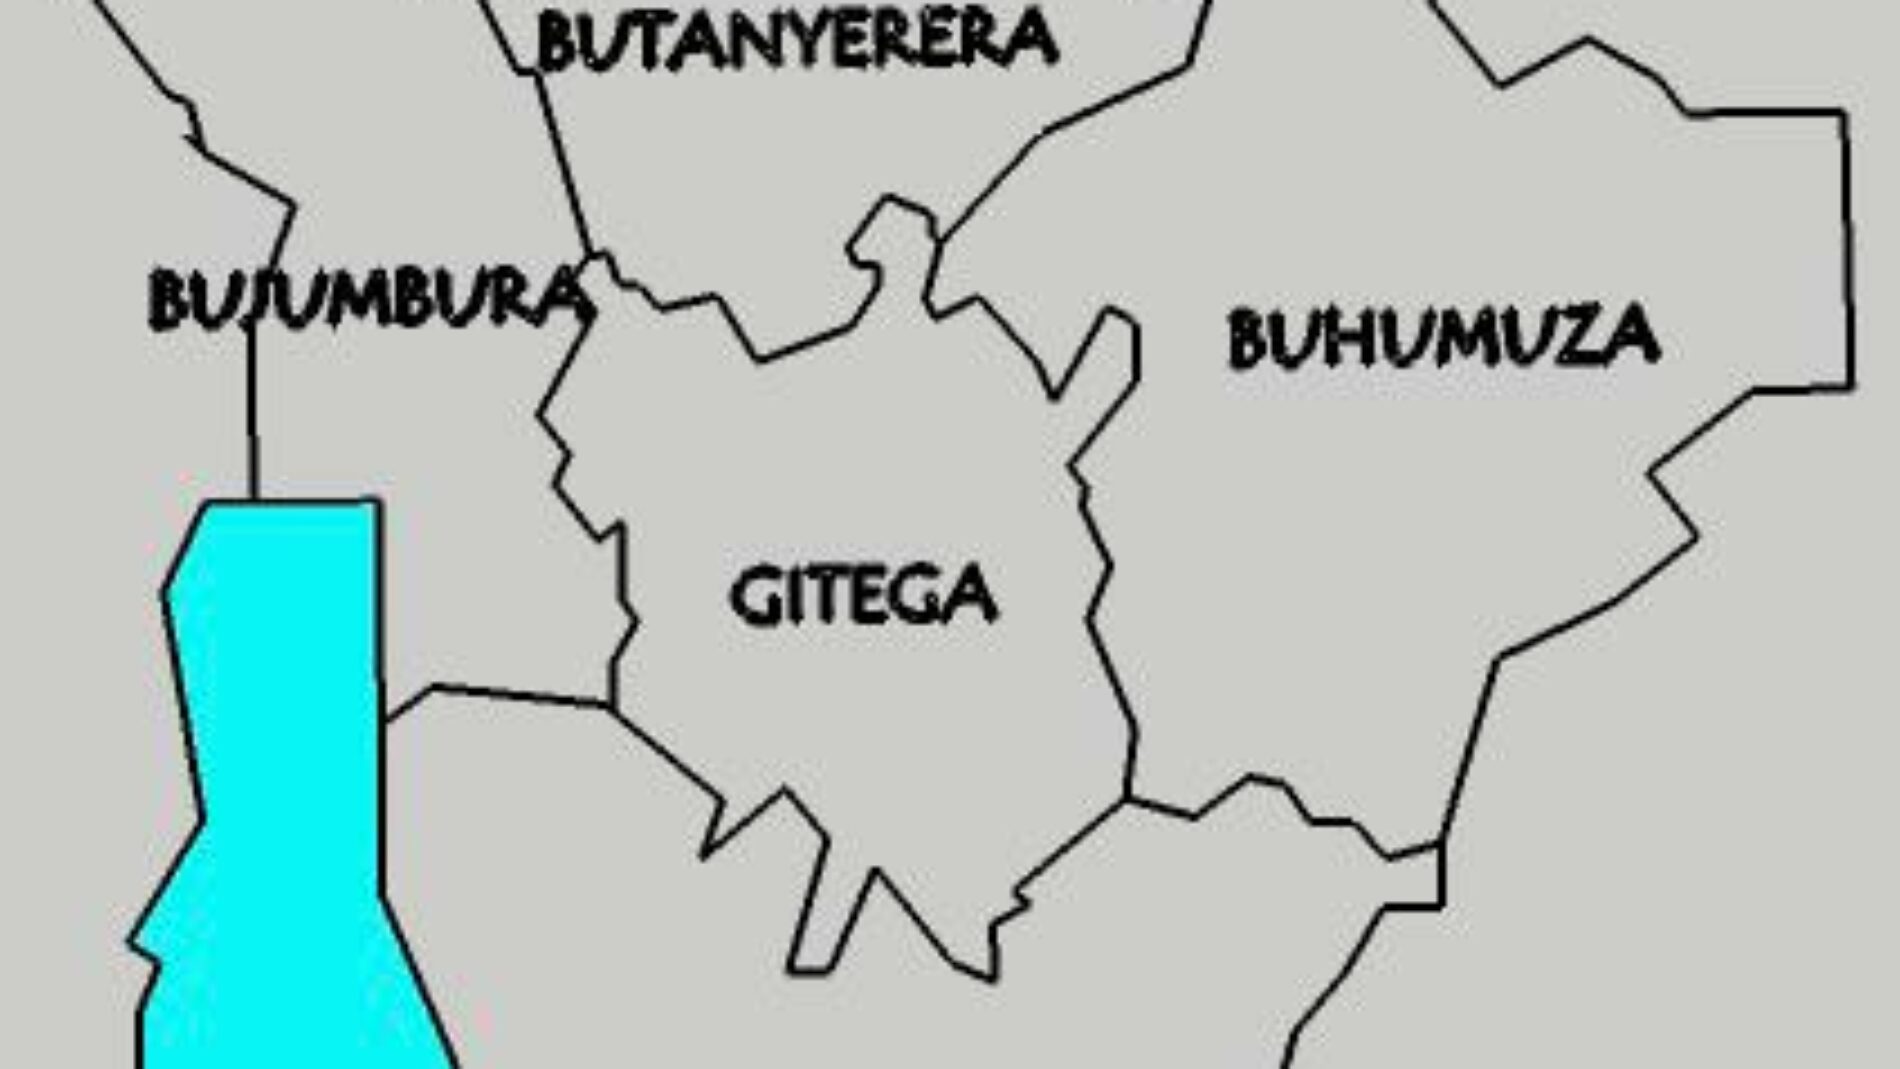 Burundi : nouveau découpage administratif, les provinces sont réduites de 18 à 5